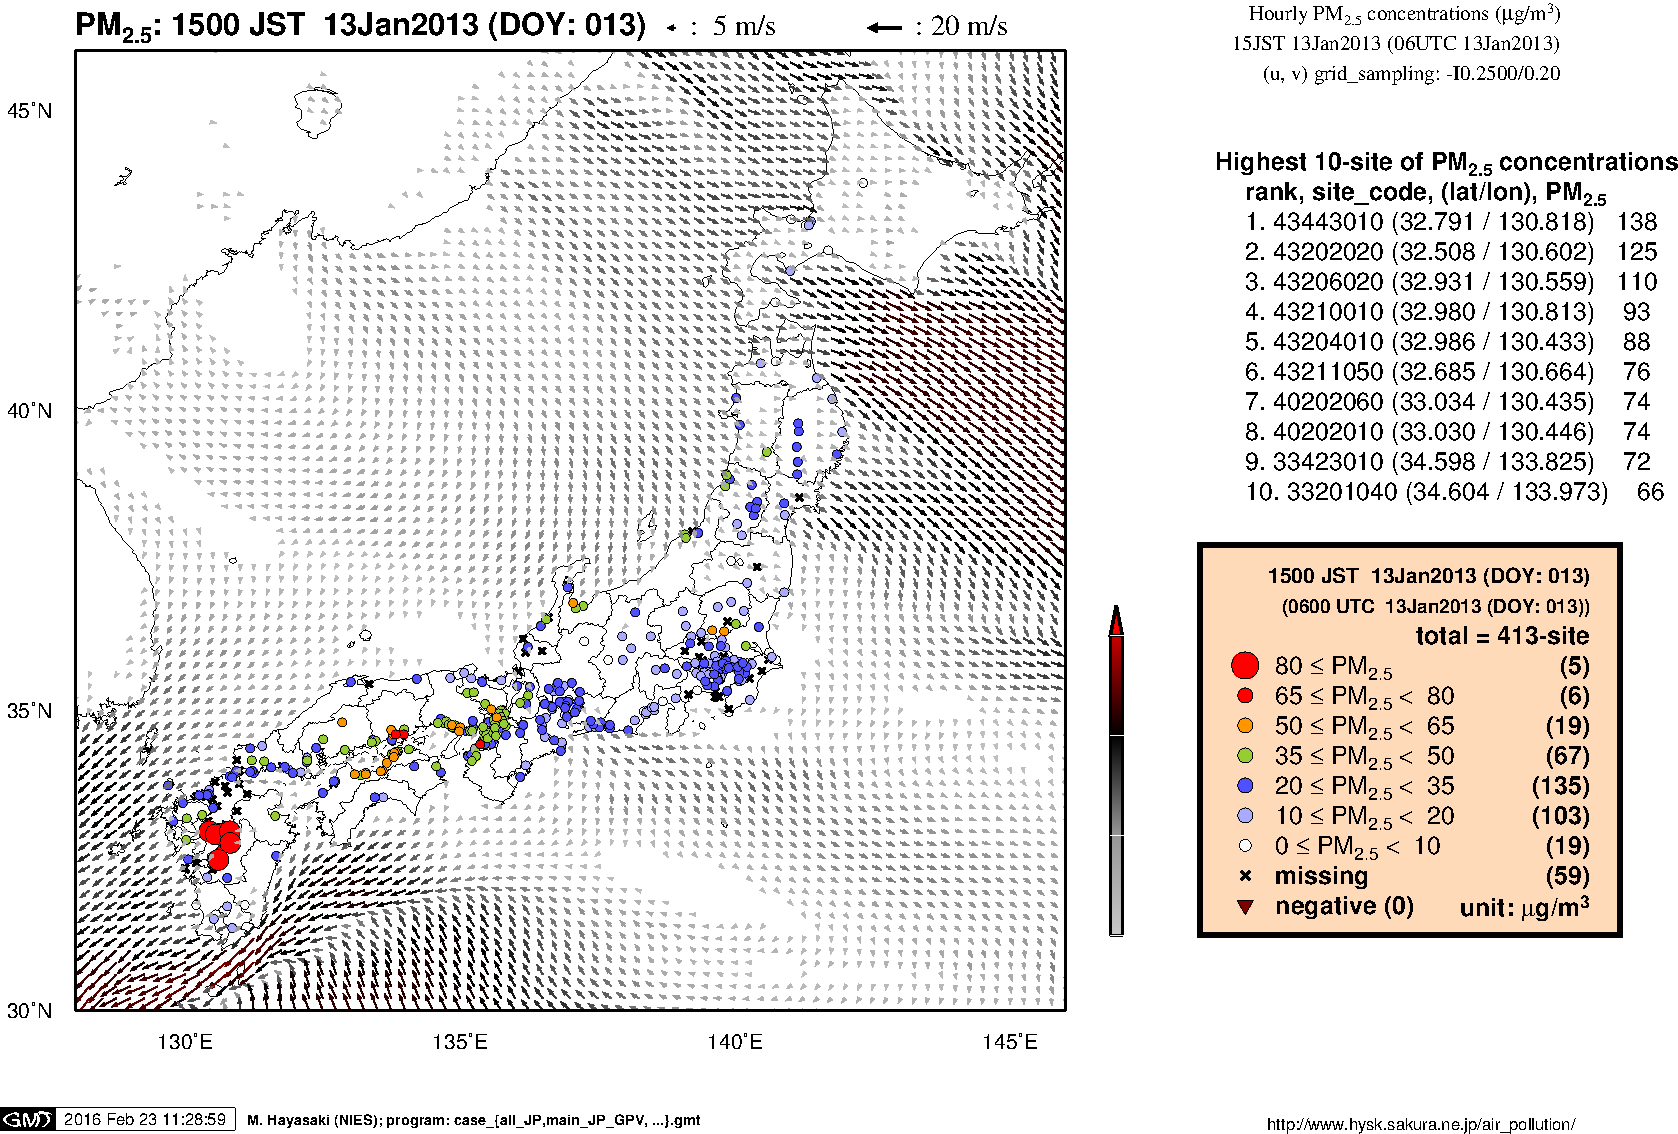 SPM concentration in Japan (15JST 13Jan2013)